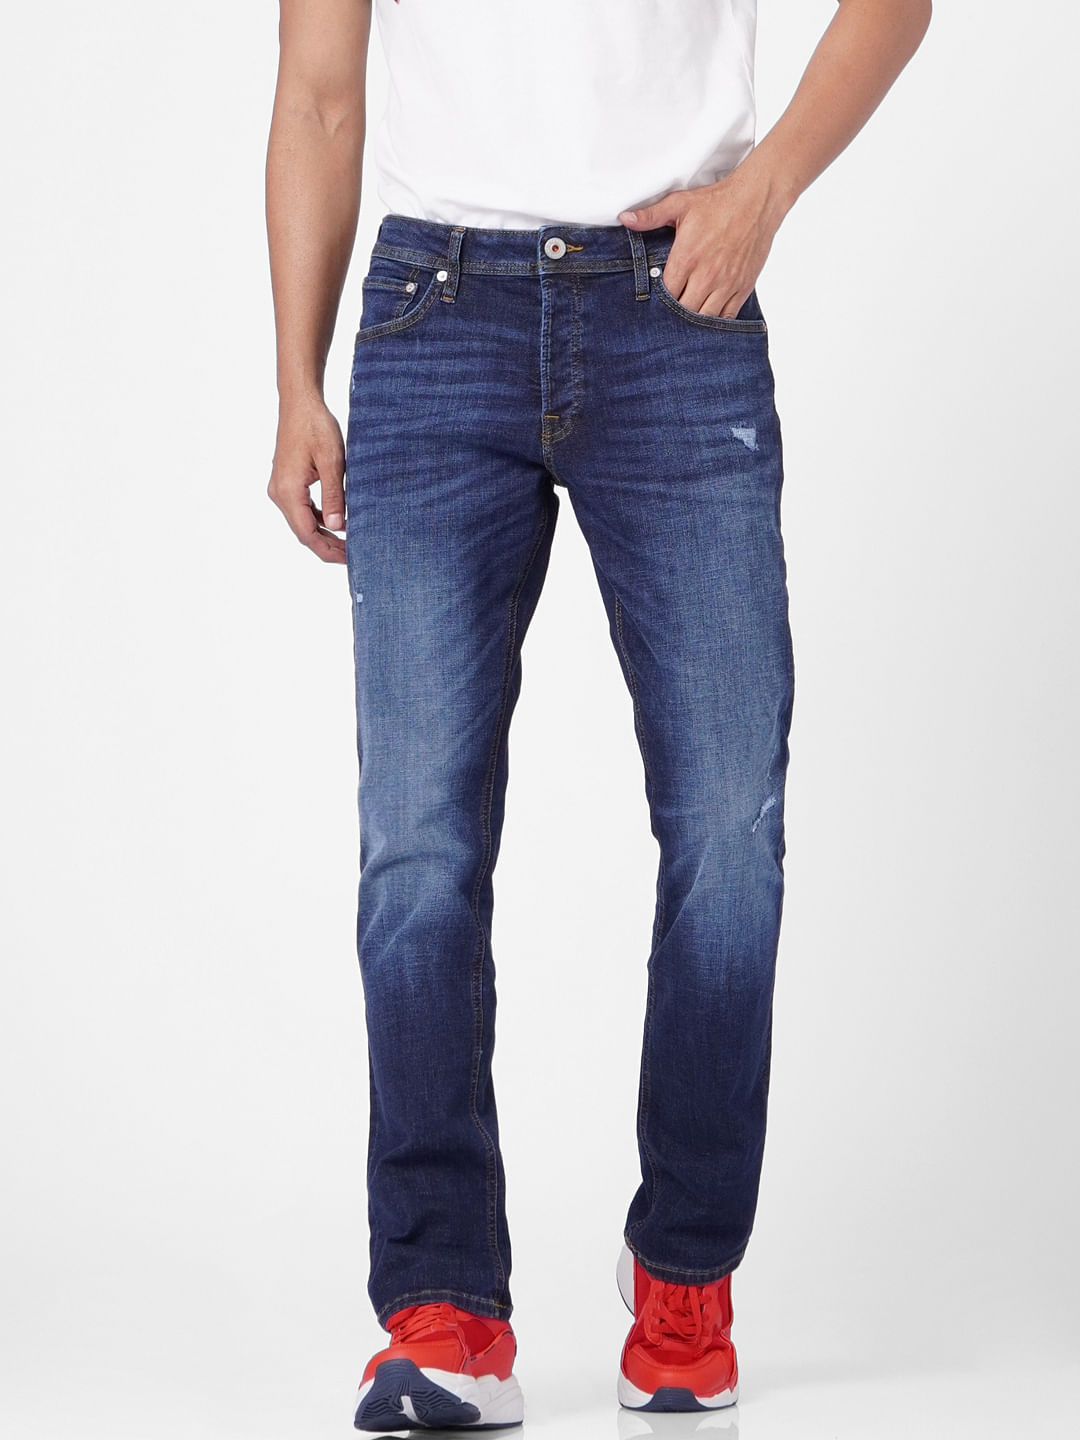 Regular Fit Jeans For Men - Buy Men Regular Fit Jeans Online in India